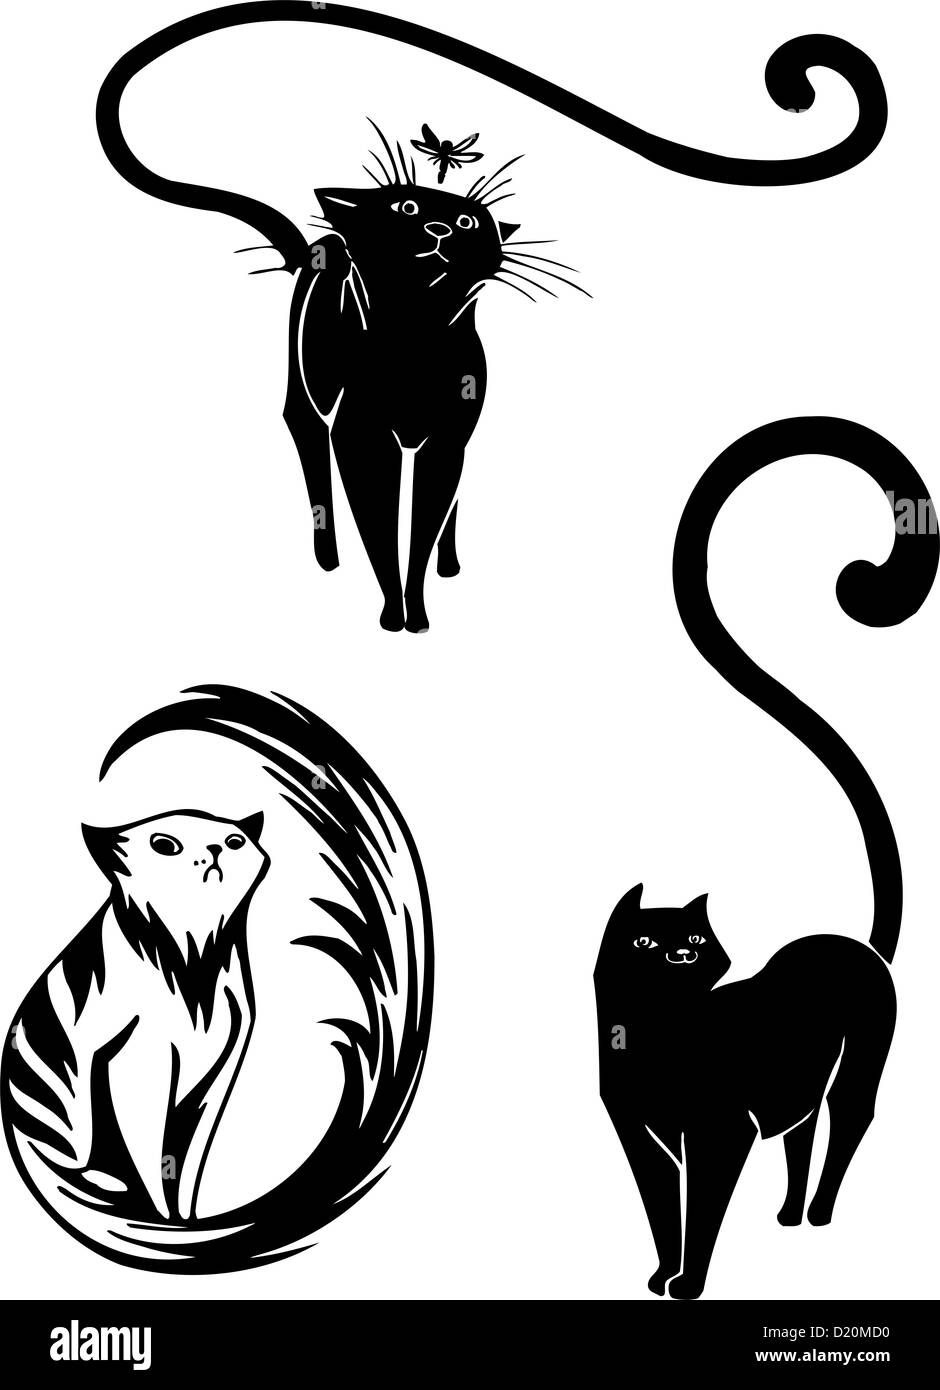 Gatos - estilizada elegancia y graciosos gatos. Foto de stock